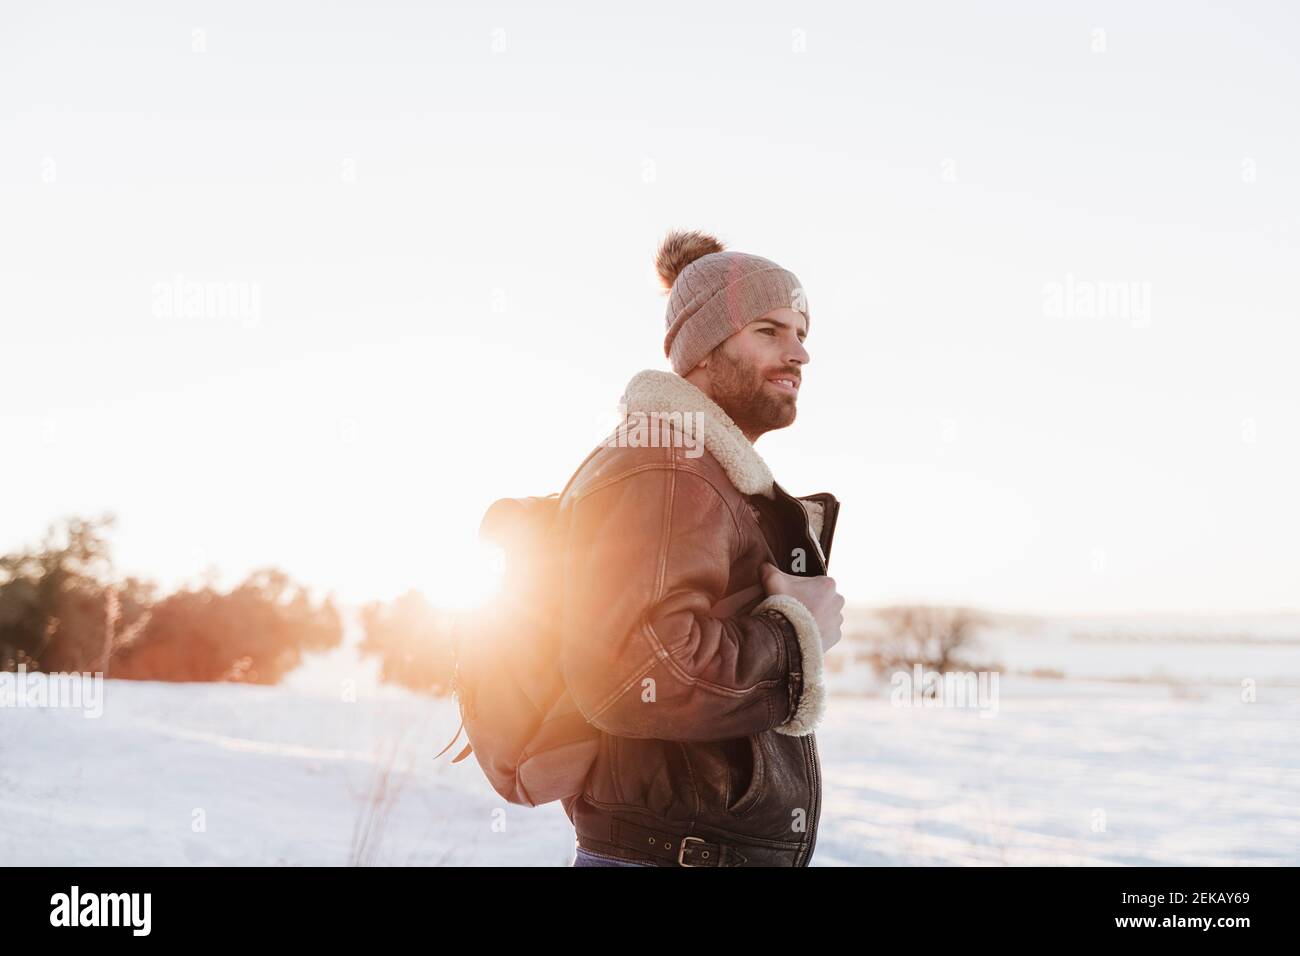 Jeune homme avec sac à dos qui regarde loin en se tenant dans la neige au coucher du soleil Banque D'Images